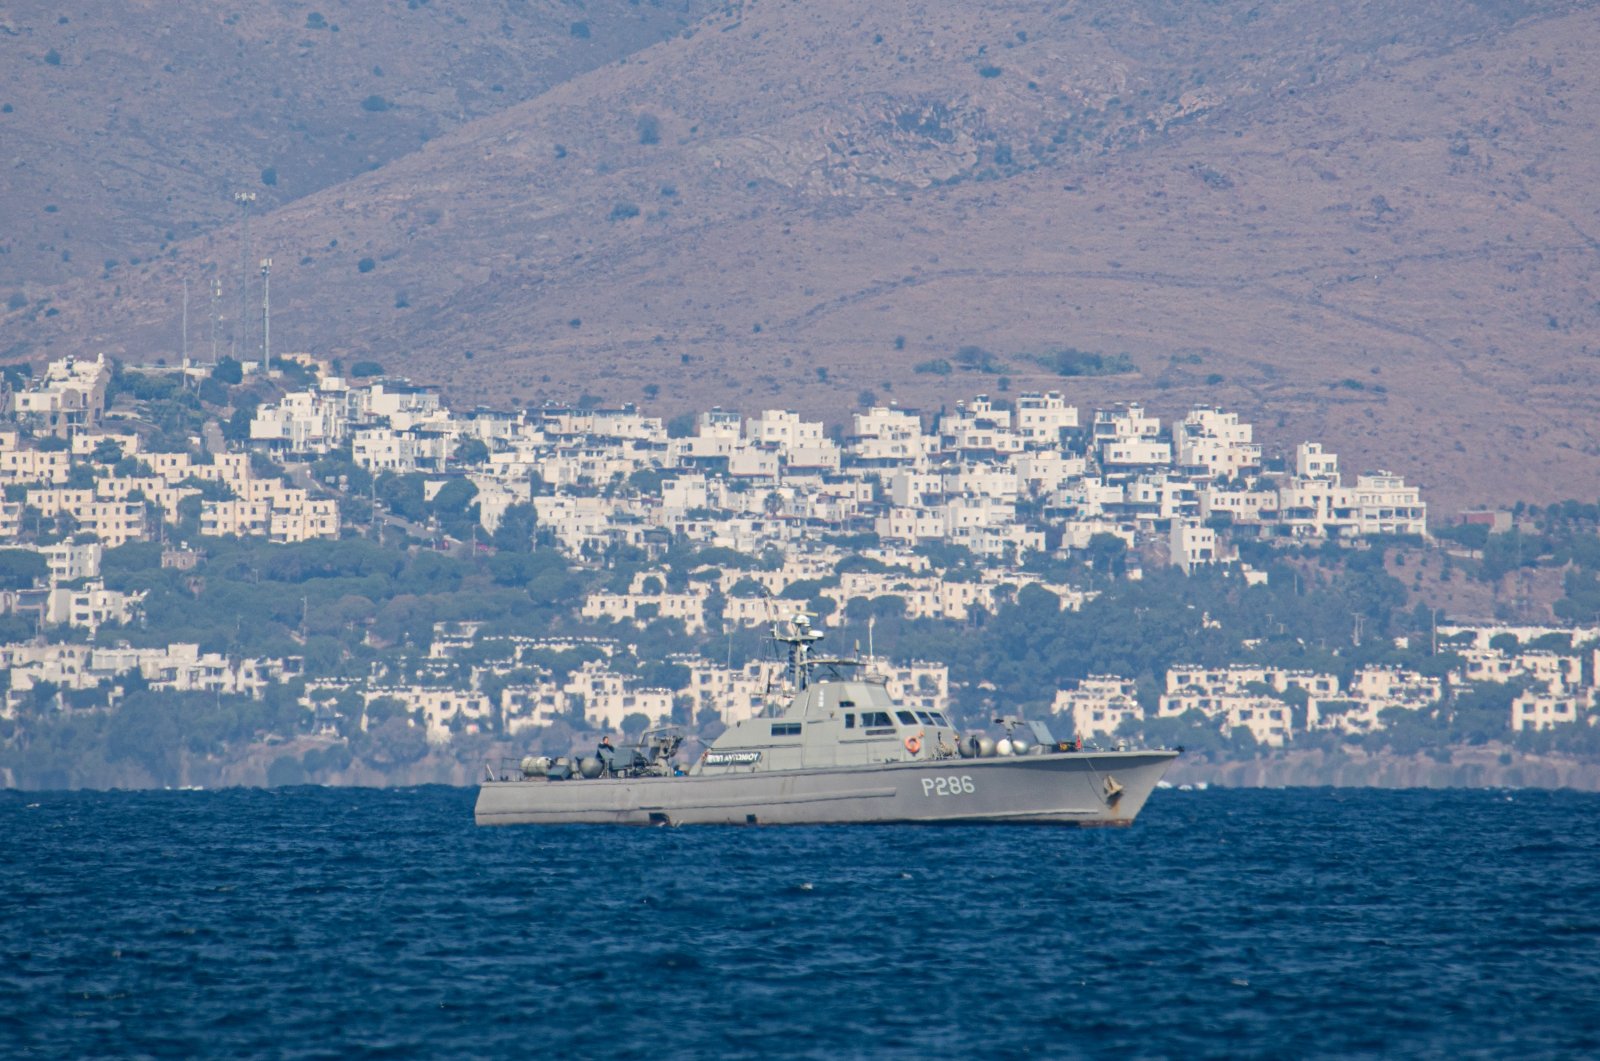 Yunani menolak menggambar ulang batas laut di Laut Aegea